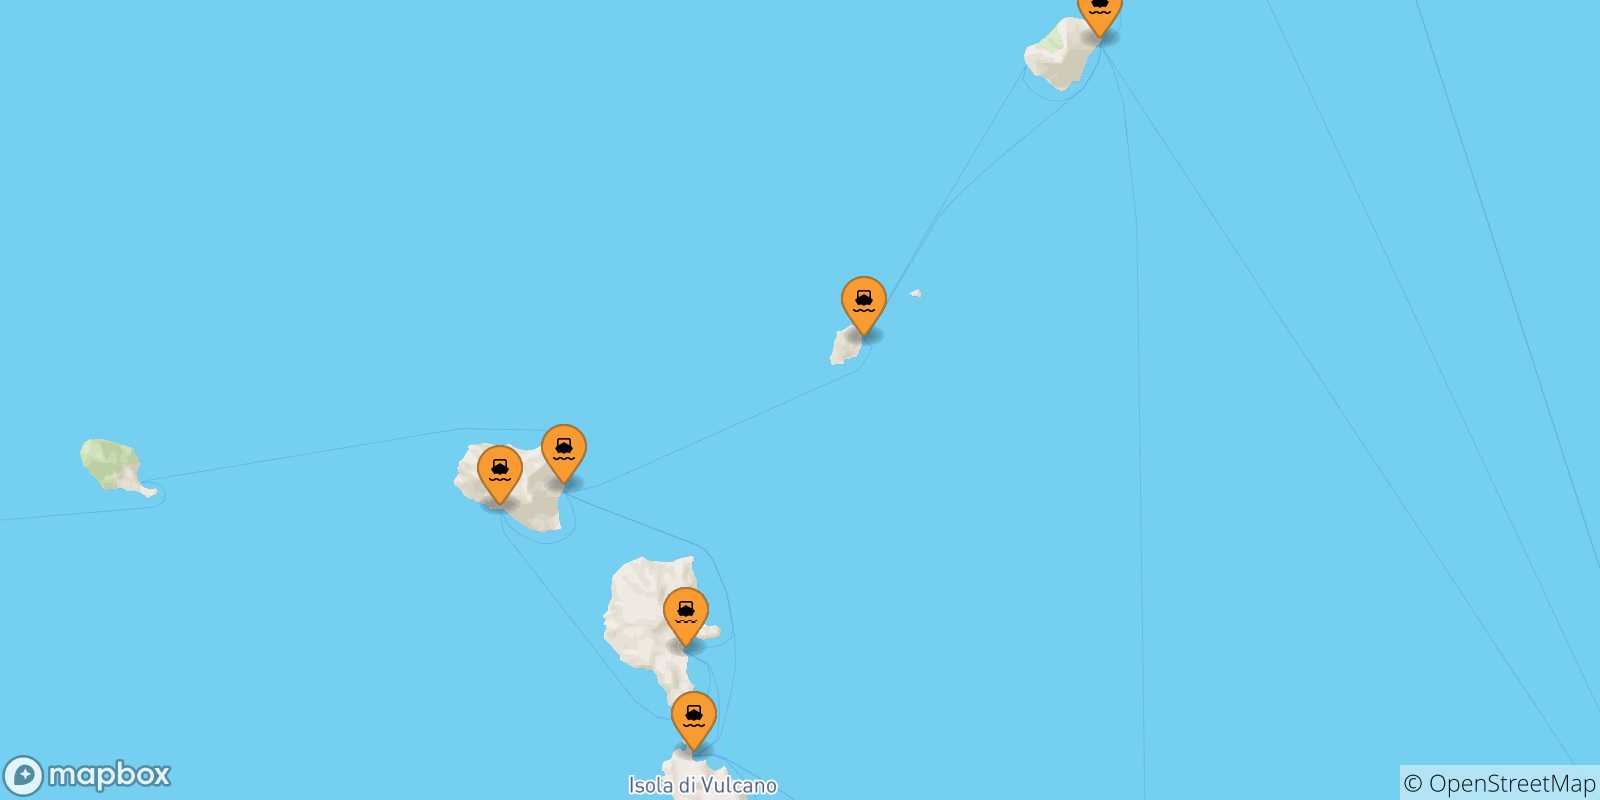 Mappa delle possibili rotte tra le Isole Eolie e Ginostra (Stromboli)